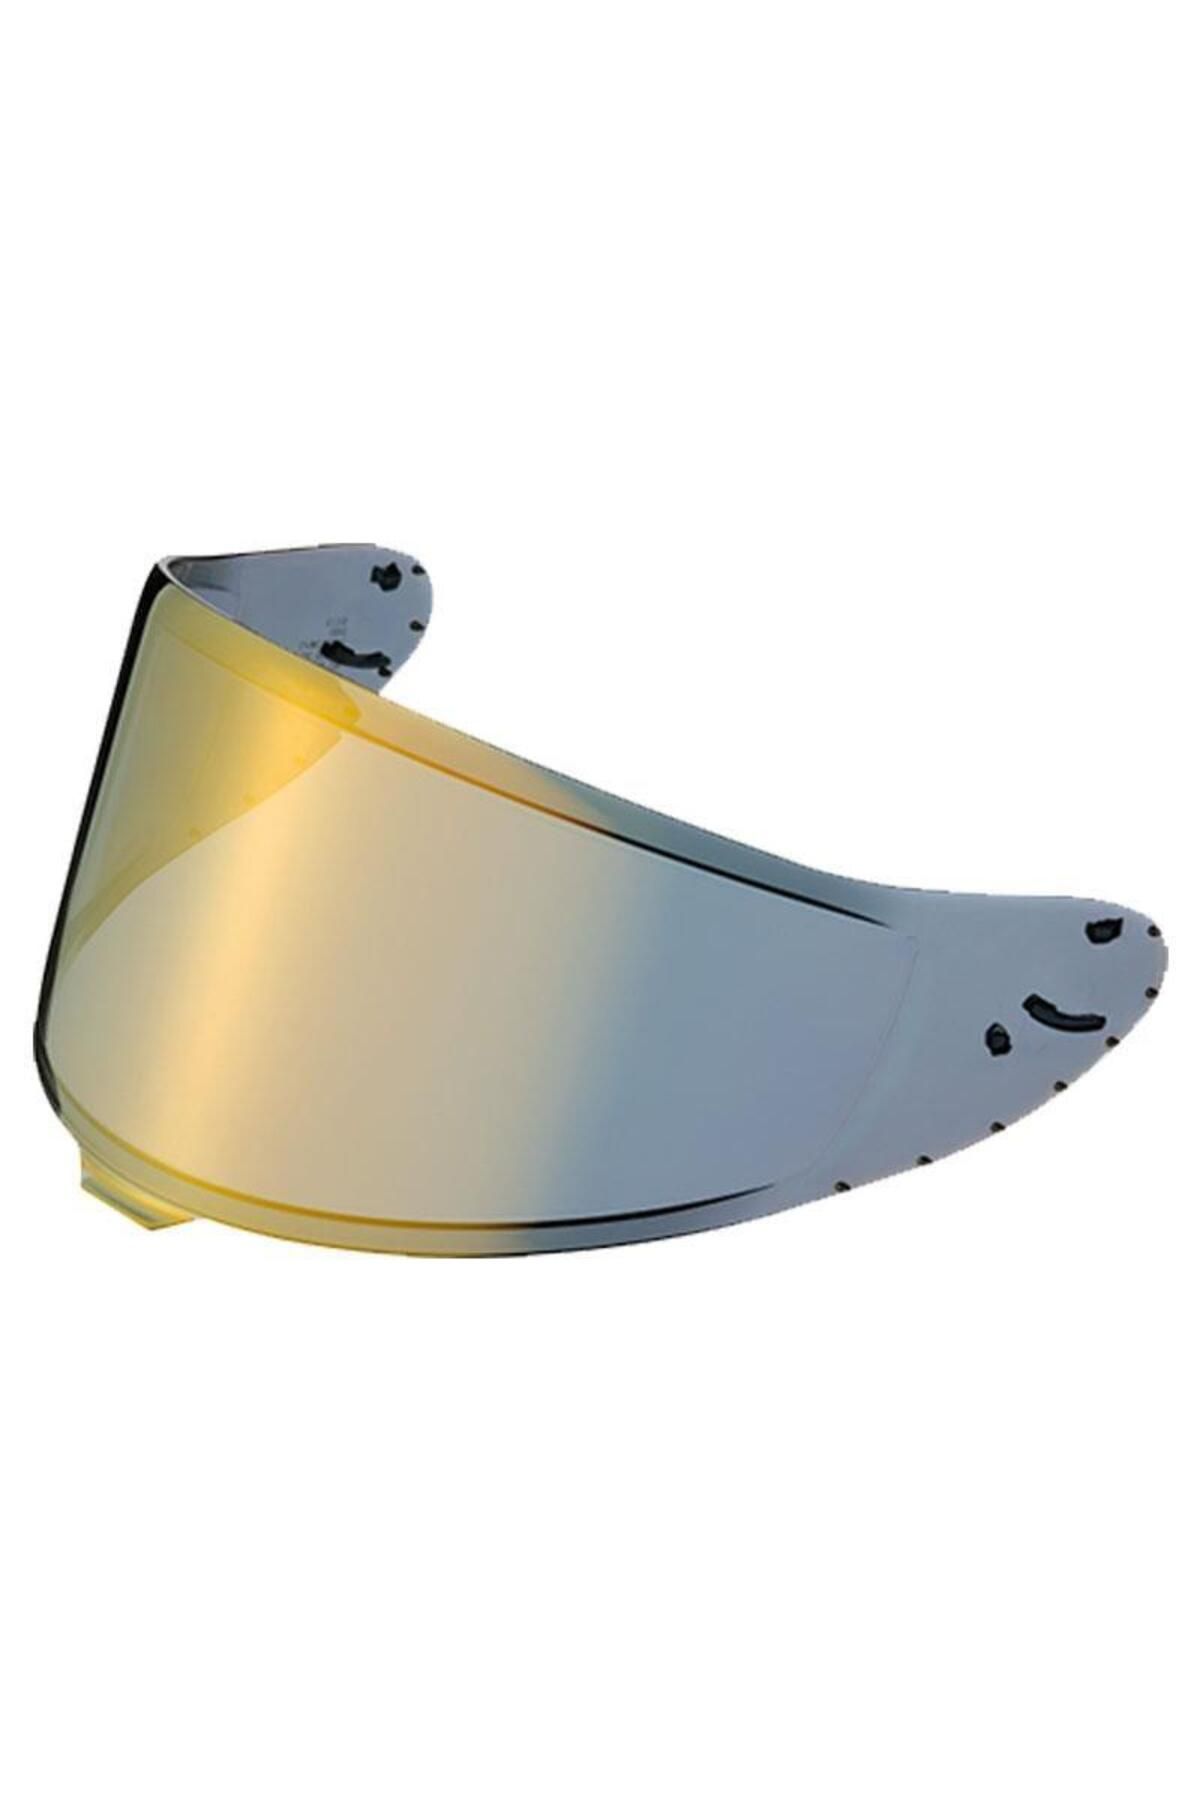 Shoei Cwr-f2pn Nxr 2 - X-spırıt Pro Kask Camı - Vizör Spectra Sarı